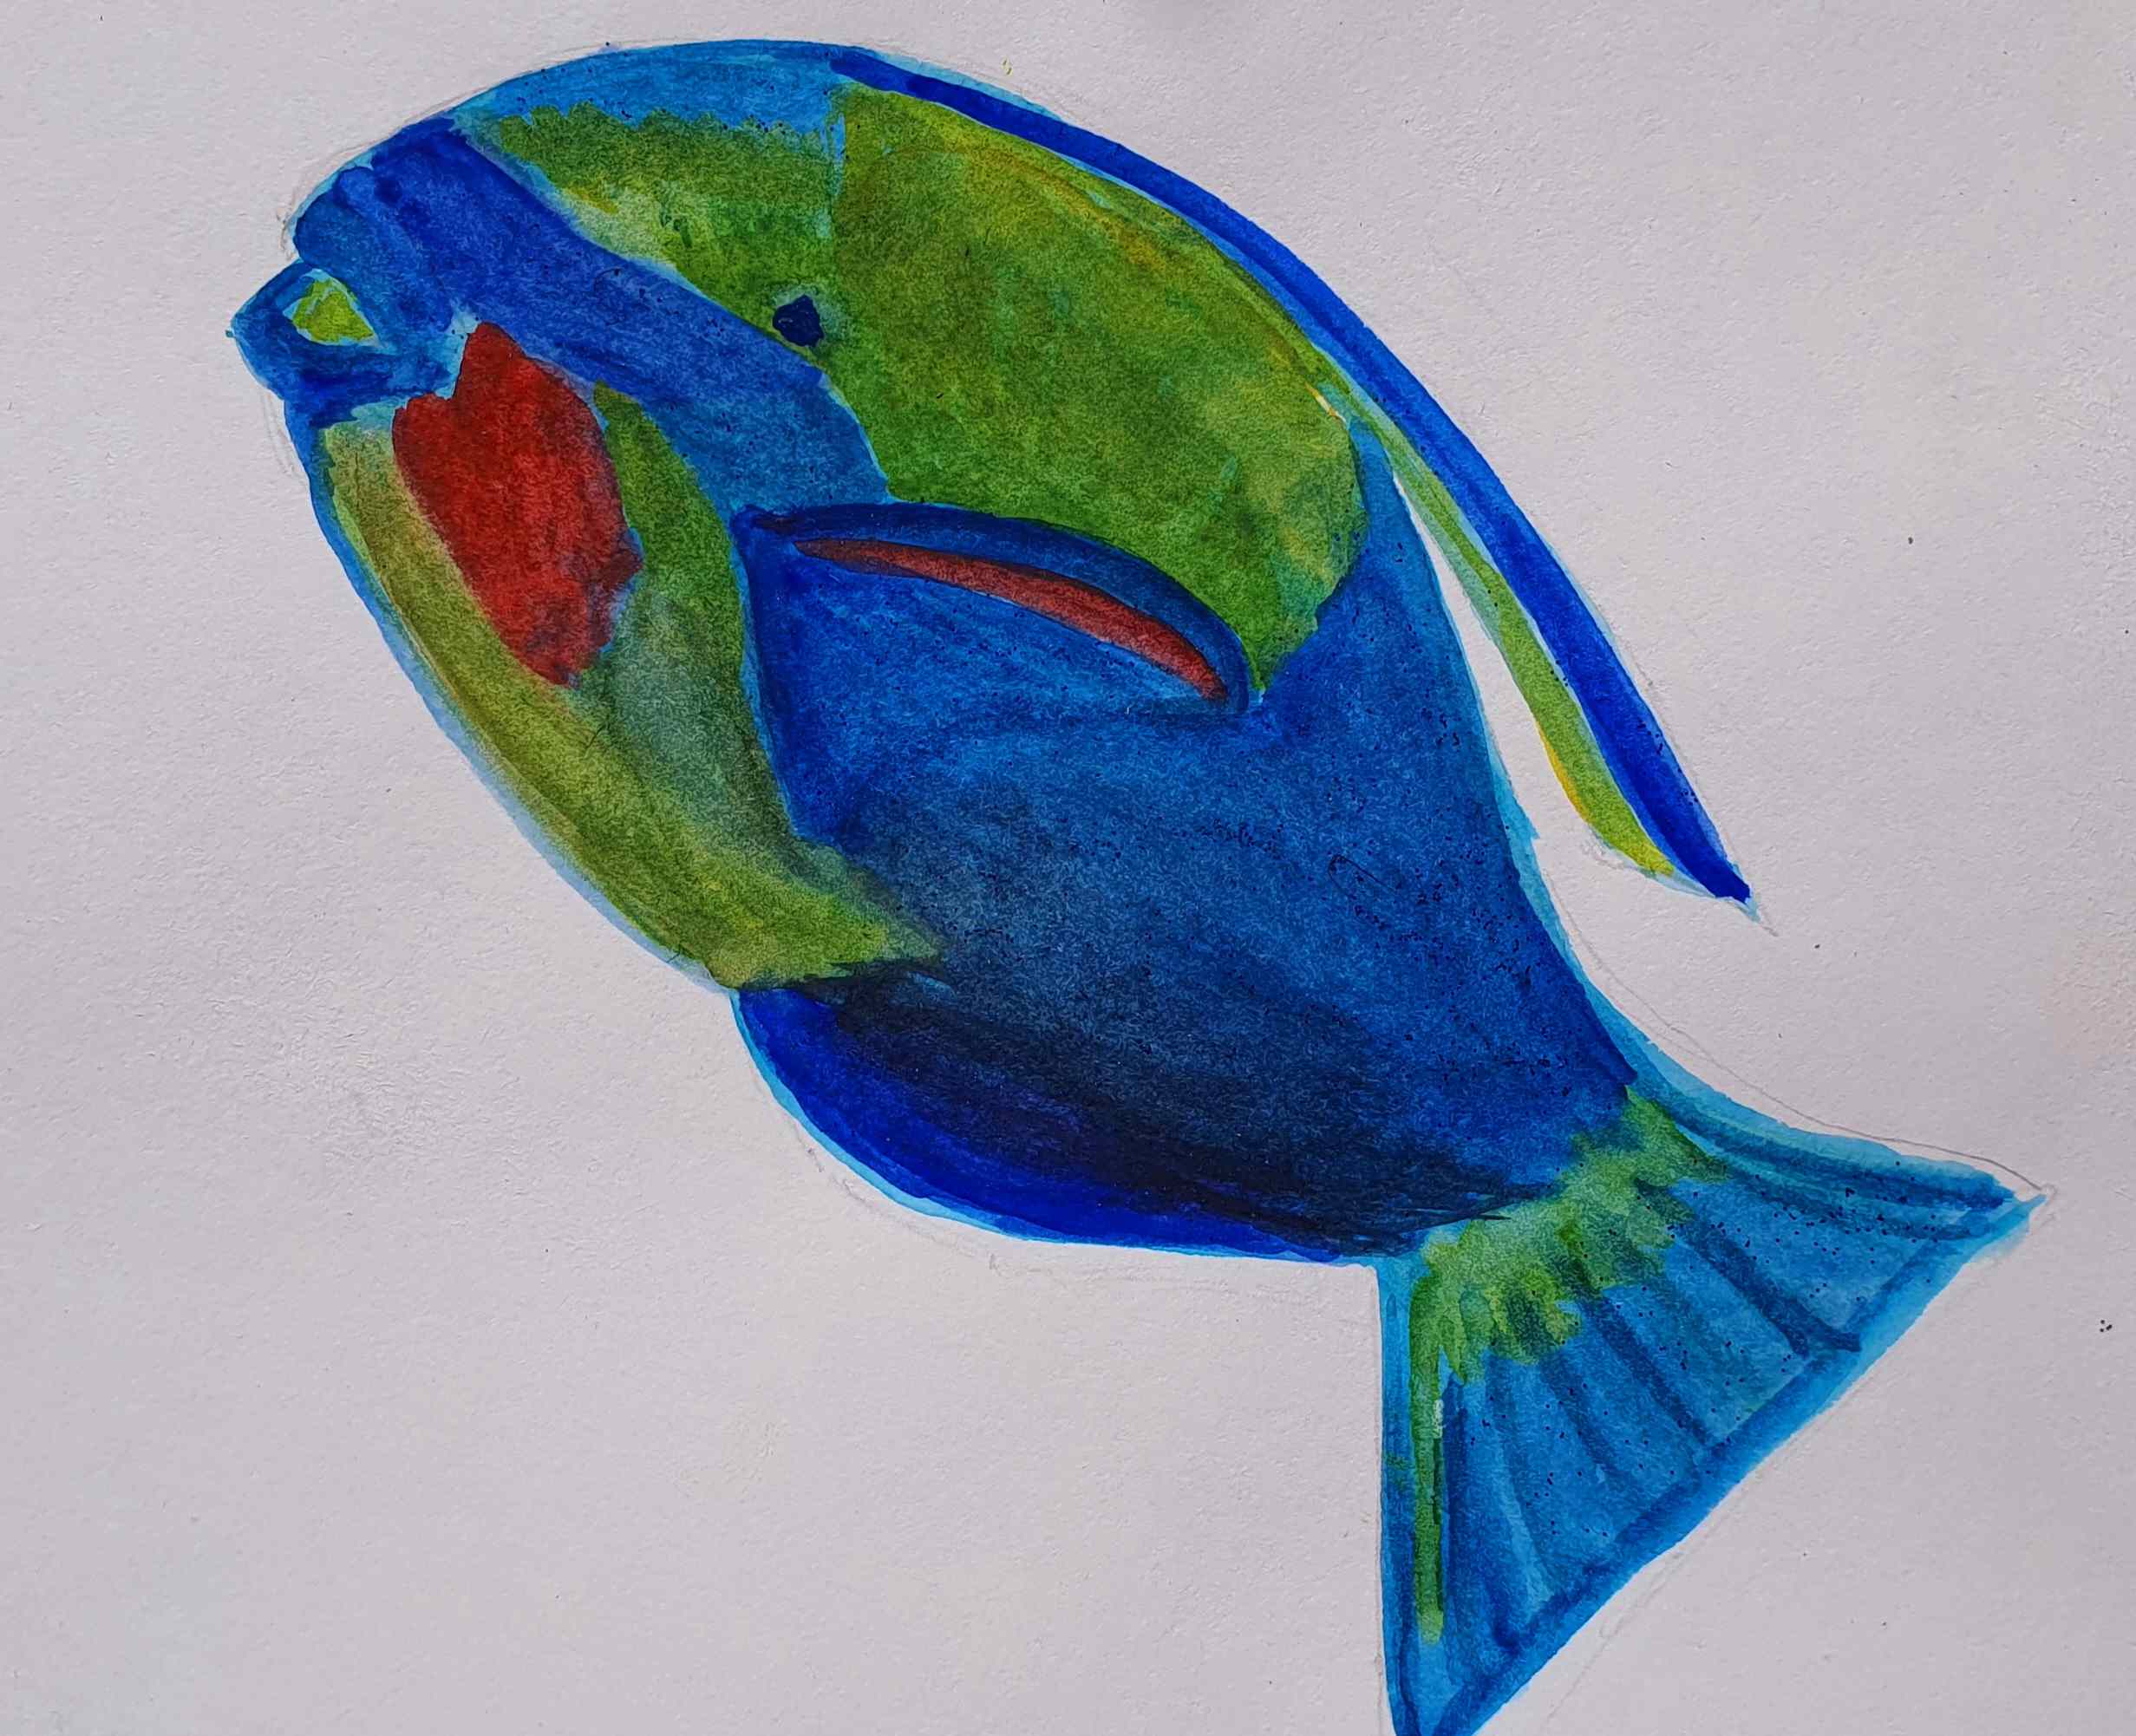 Рыба-попугай, ч. 578.